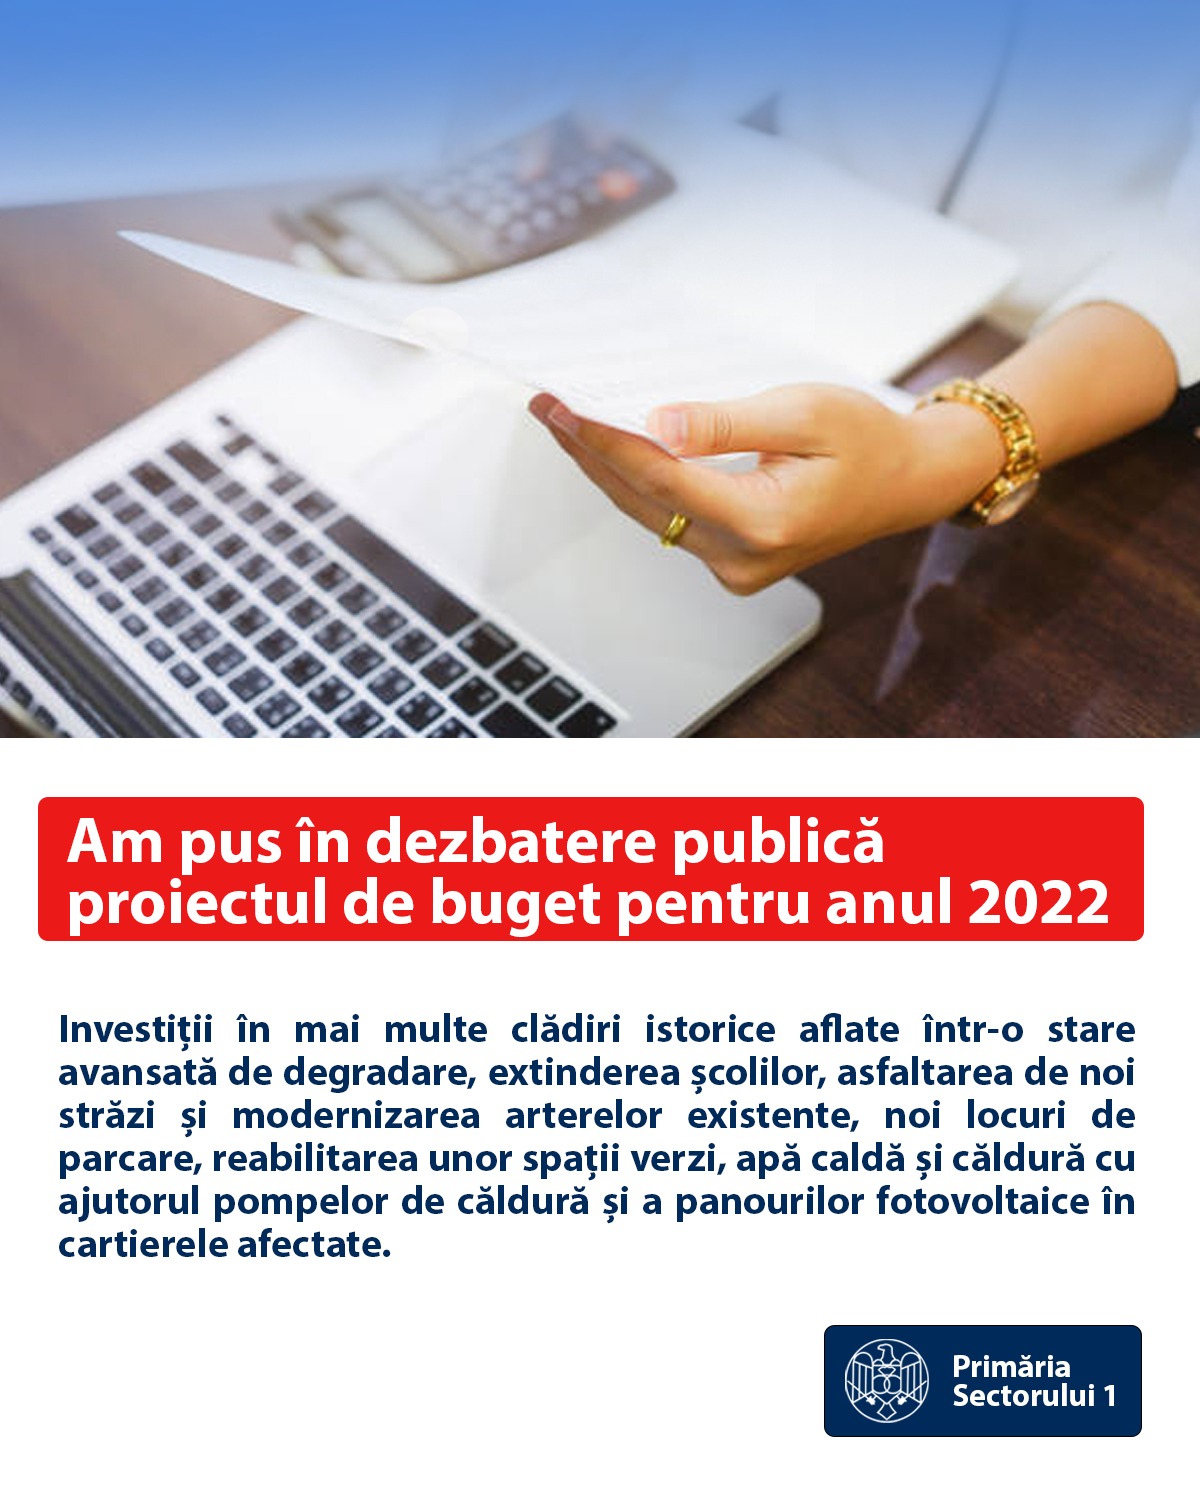 Punem în dezbatere publică proiectul de buget pentru anul 2022